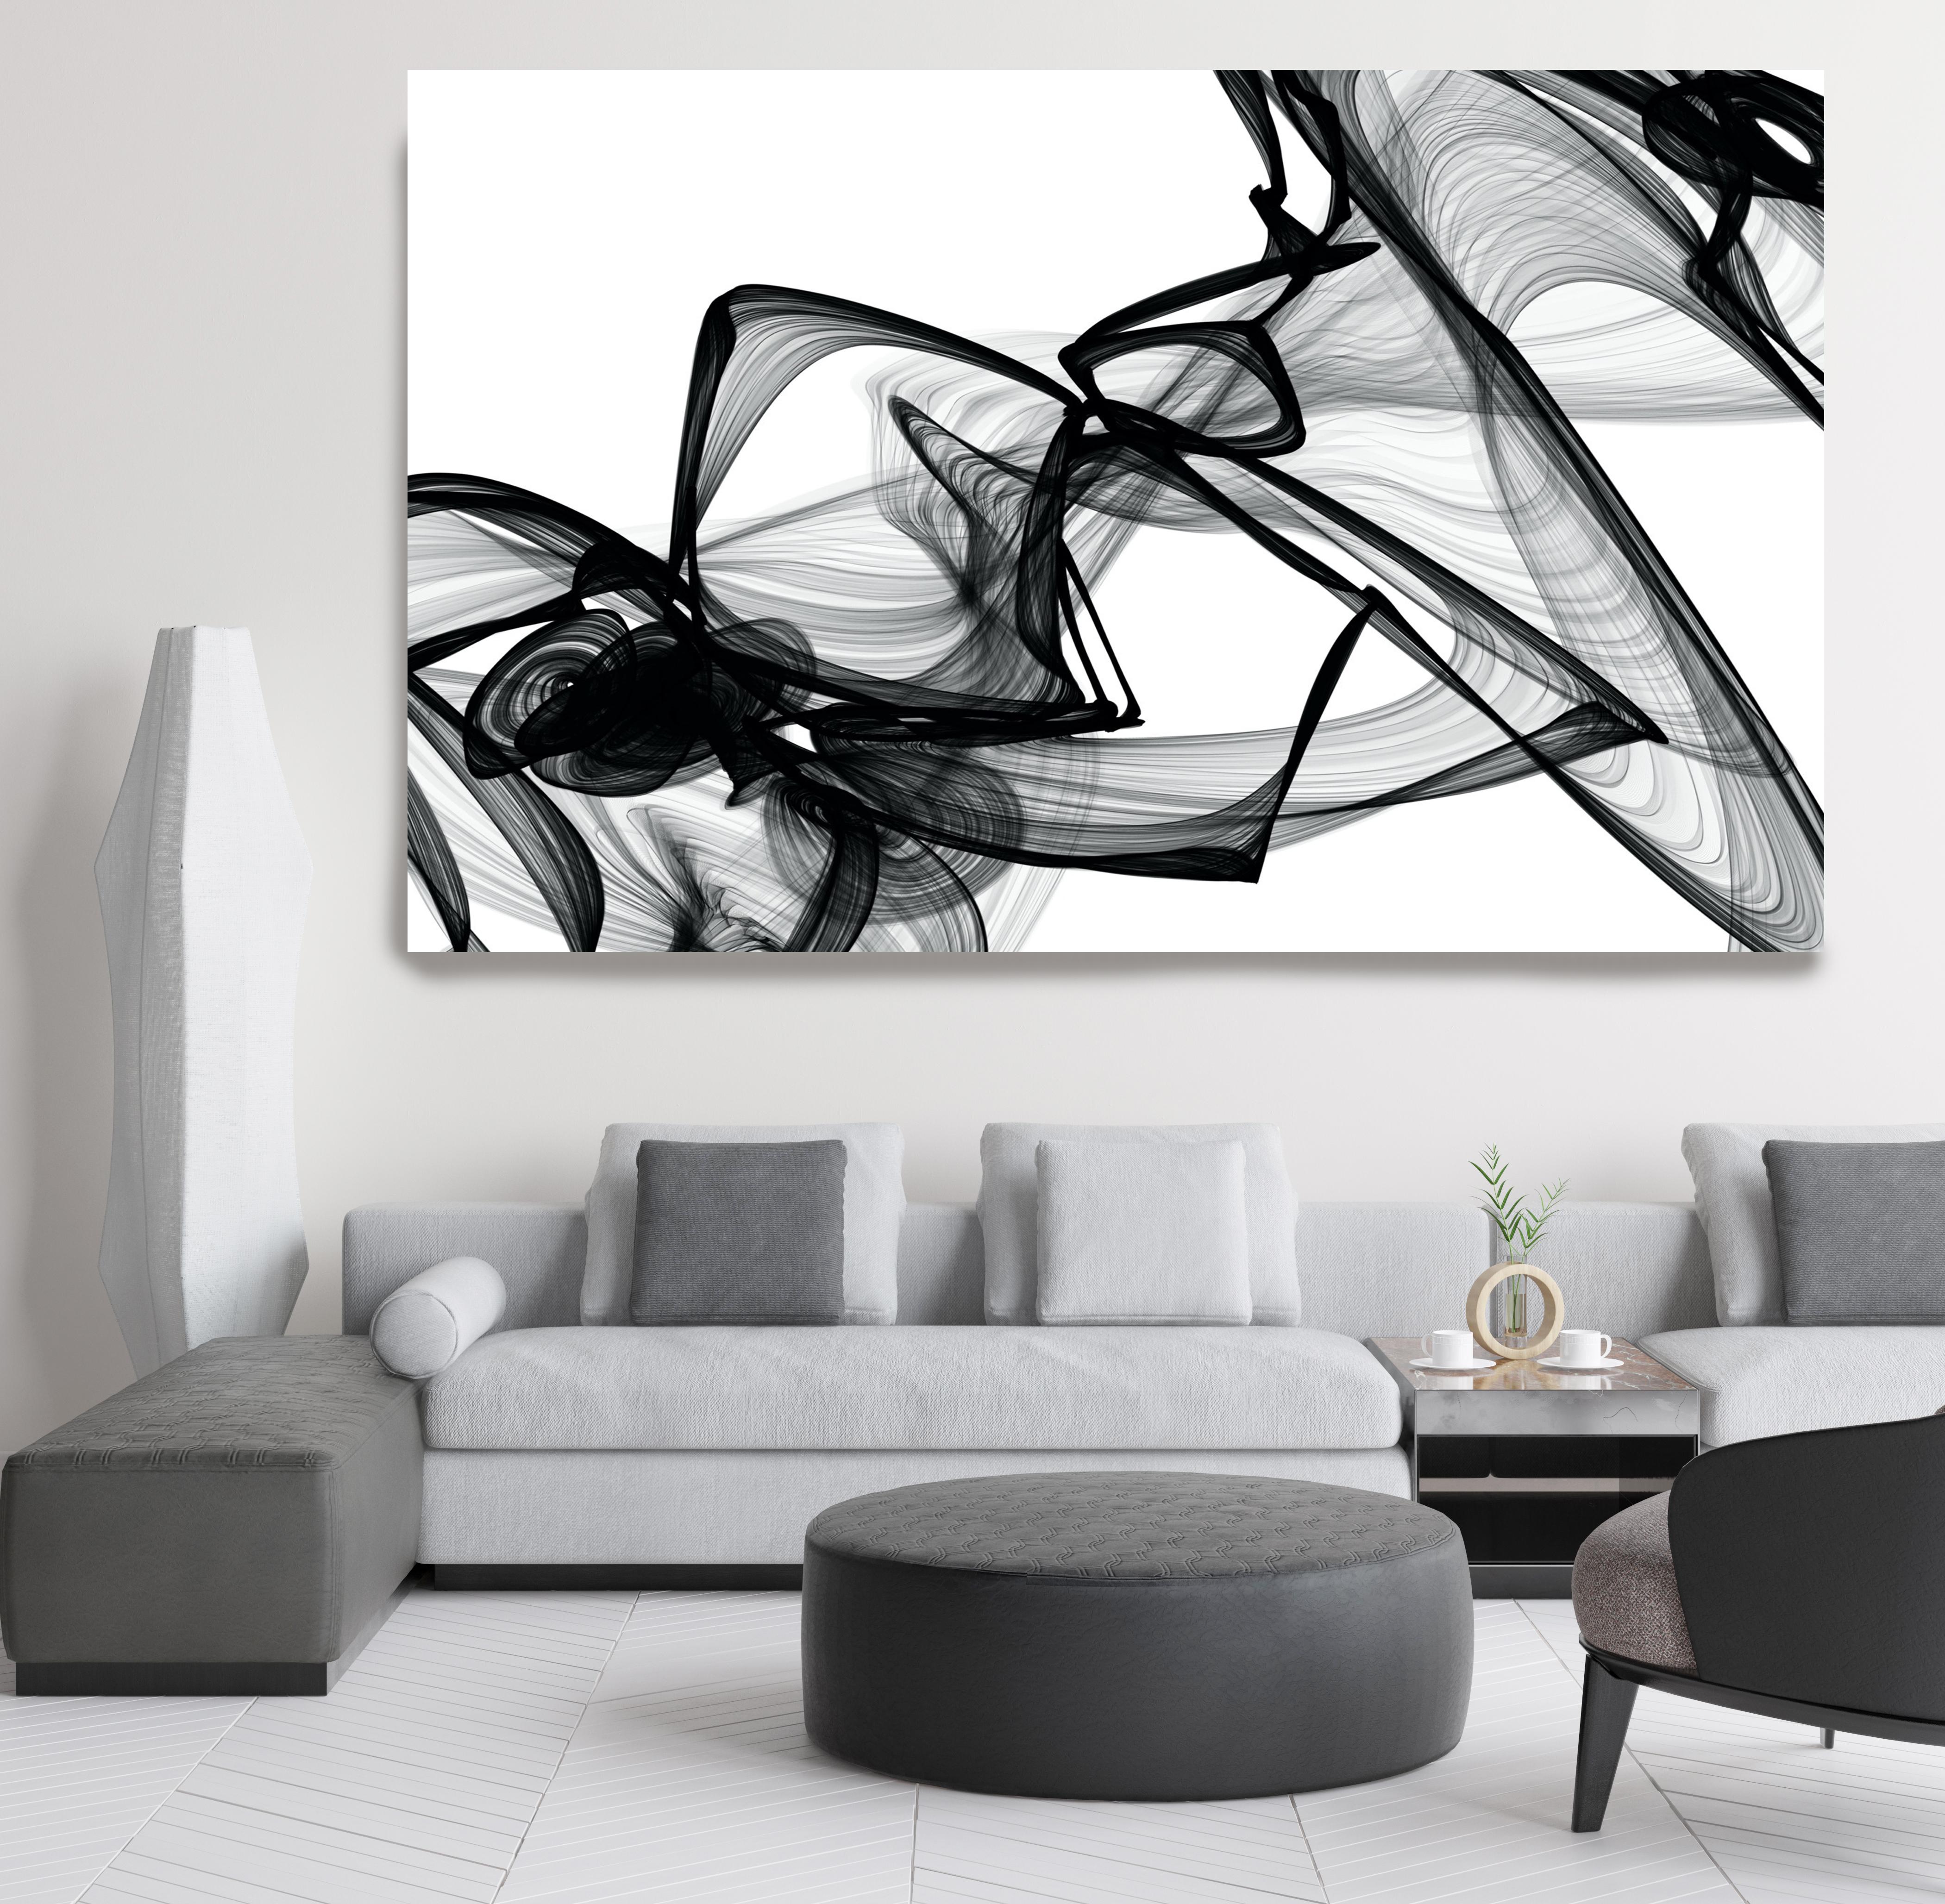 Minimalistisches Kunstgemälde in Schwarz-Weiß mit neuen Medien auf Leinwand, 44x72, Schwarz-Weiß, Schwarzweiß